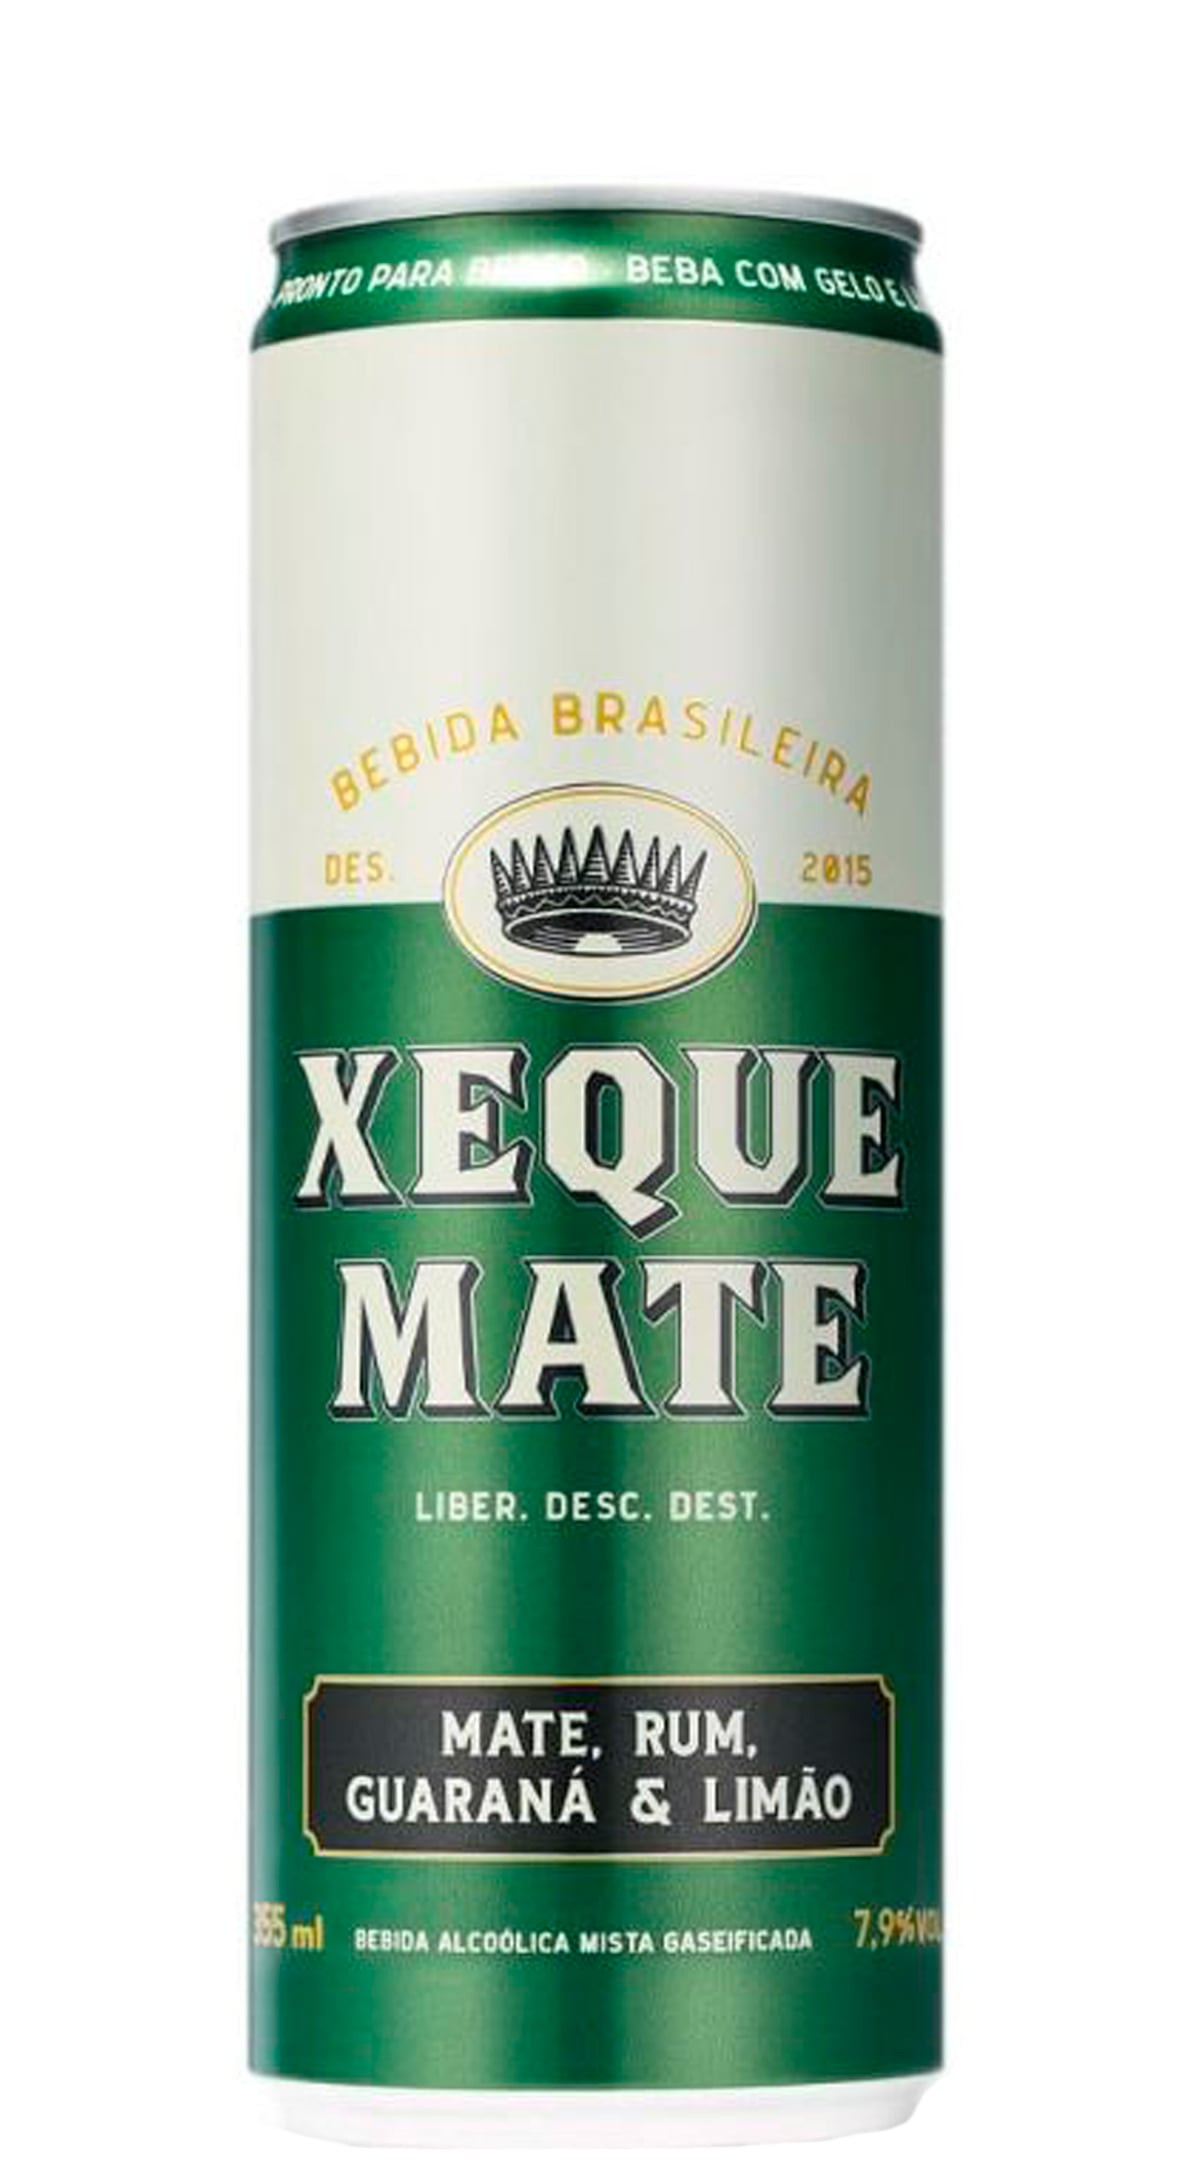 Xeque Mate São Paulo